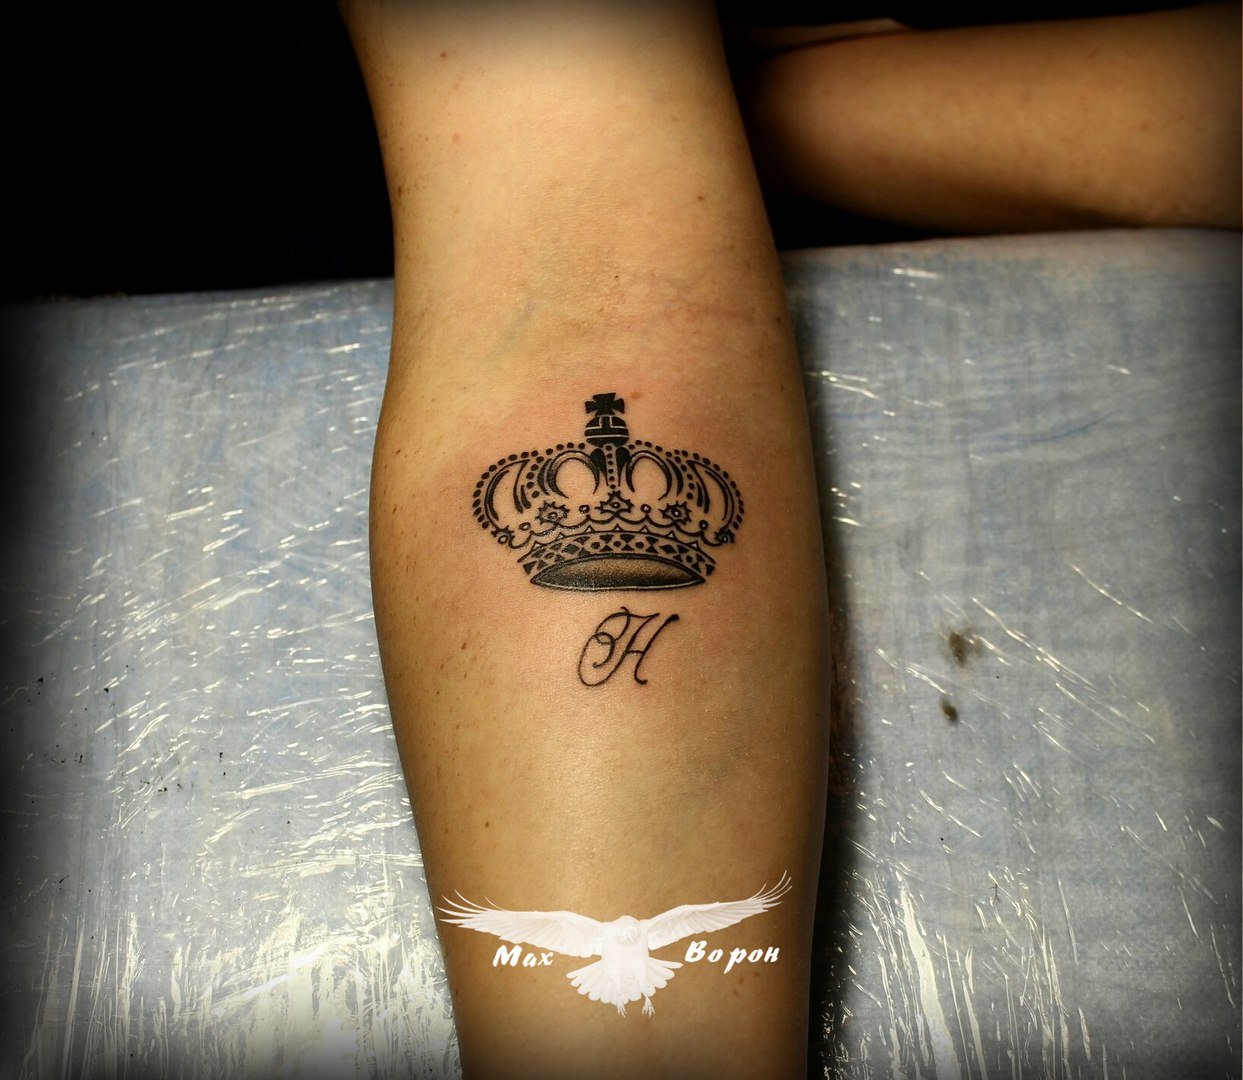 Татуировка короны на руке девушки с буквой н